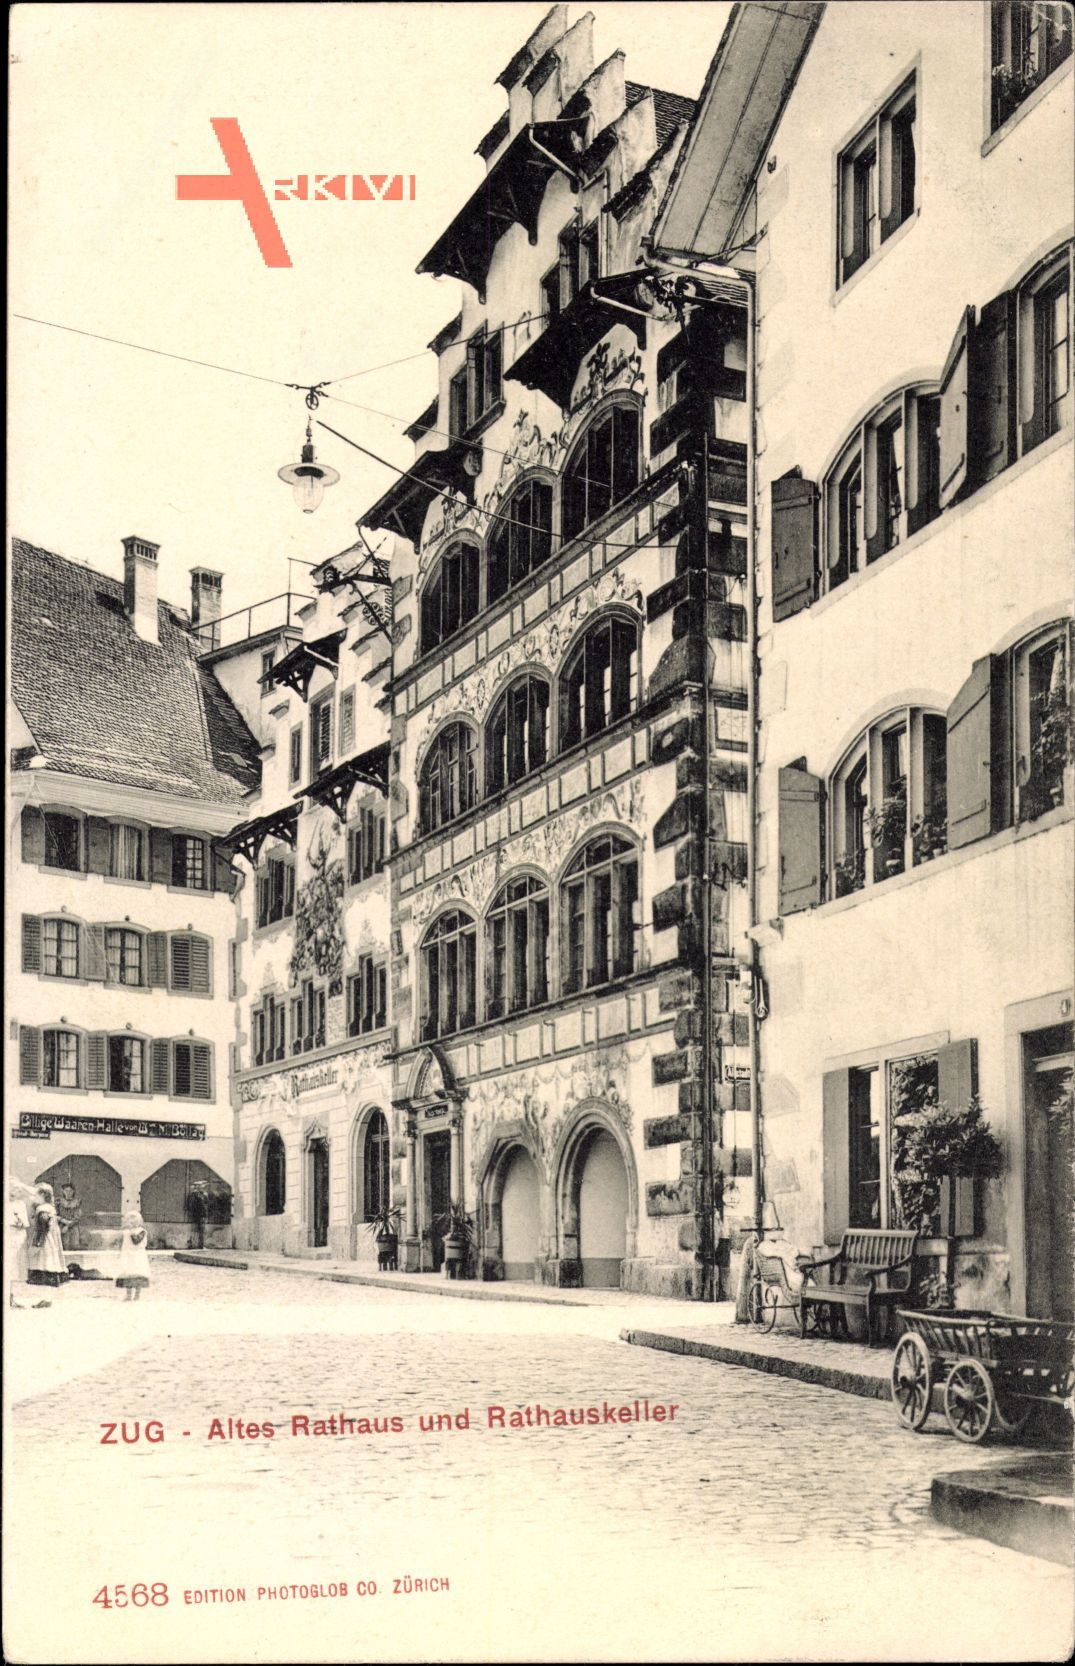 Zug Stadt Schweiz, Altes Rathaus und Rathauskeller, Giebelhaus